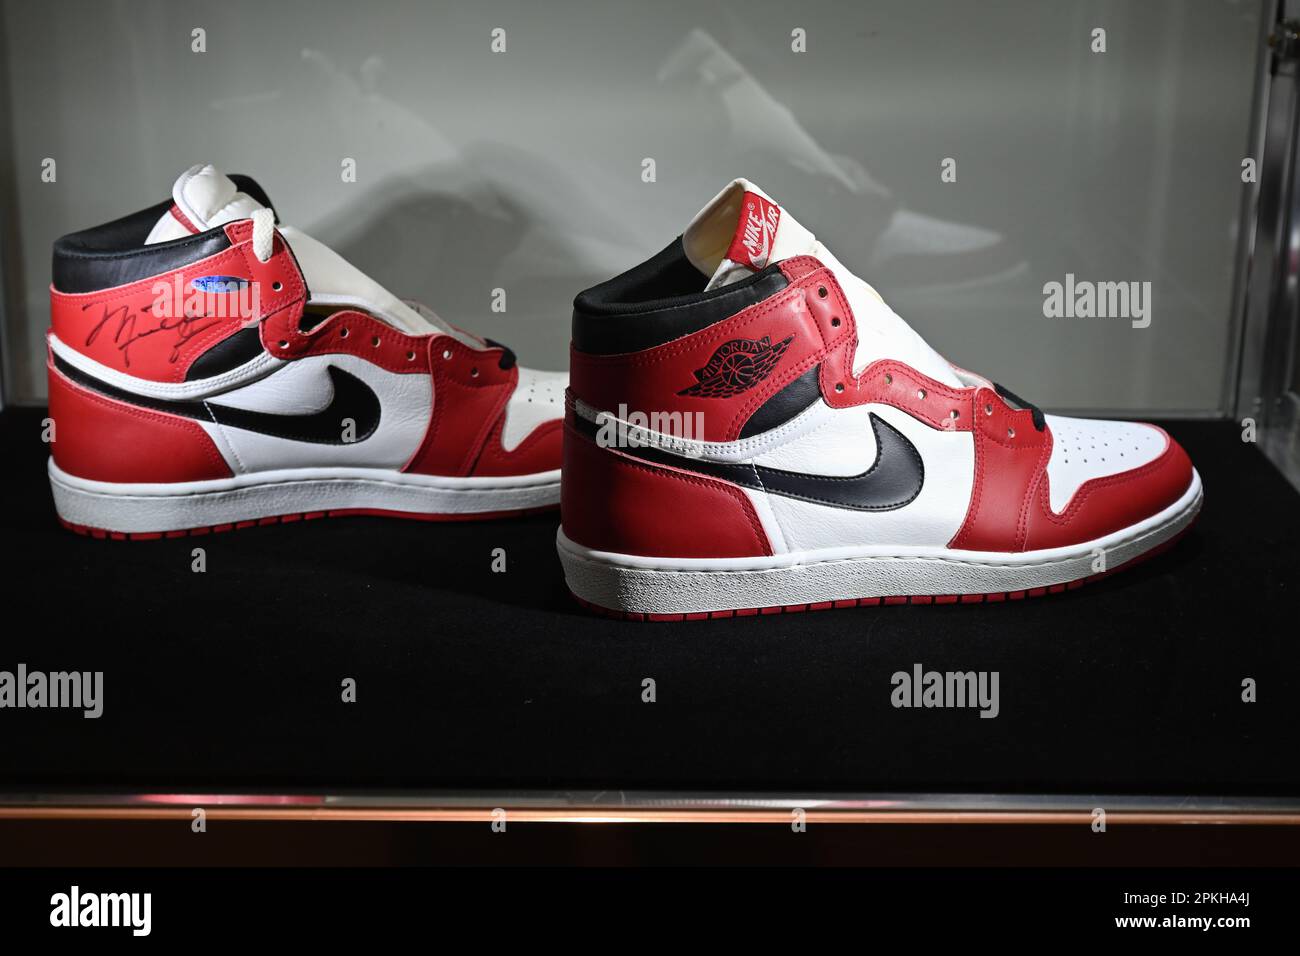 Michael Jordan Signed 1985 'Player Sample' Air Jordan 1s, Sizes 13, 13.5, fifty, 2022